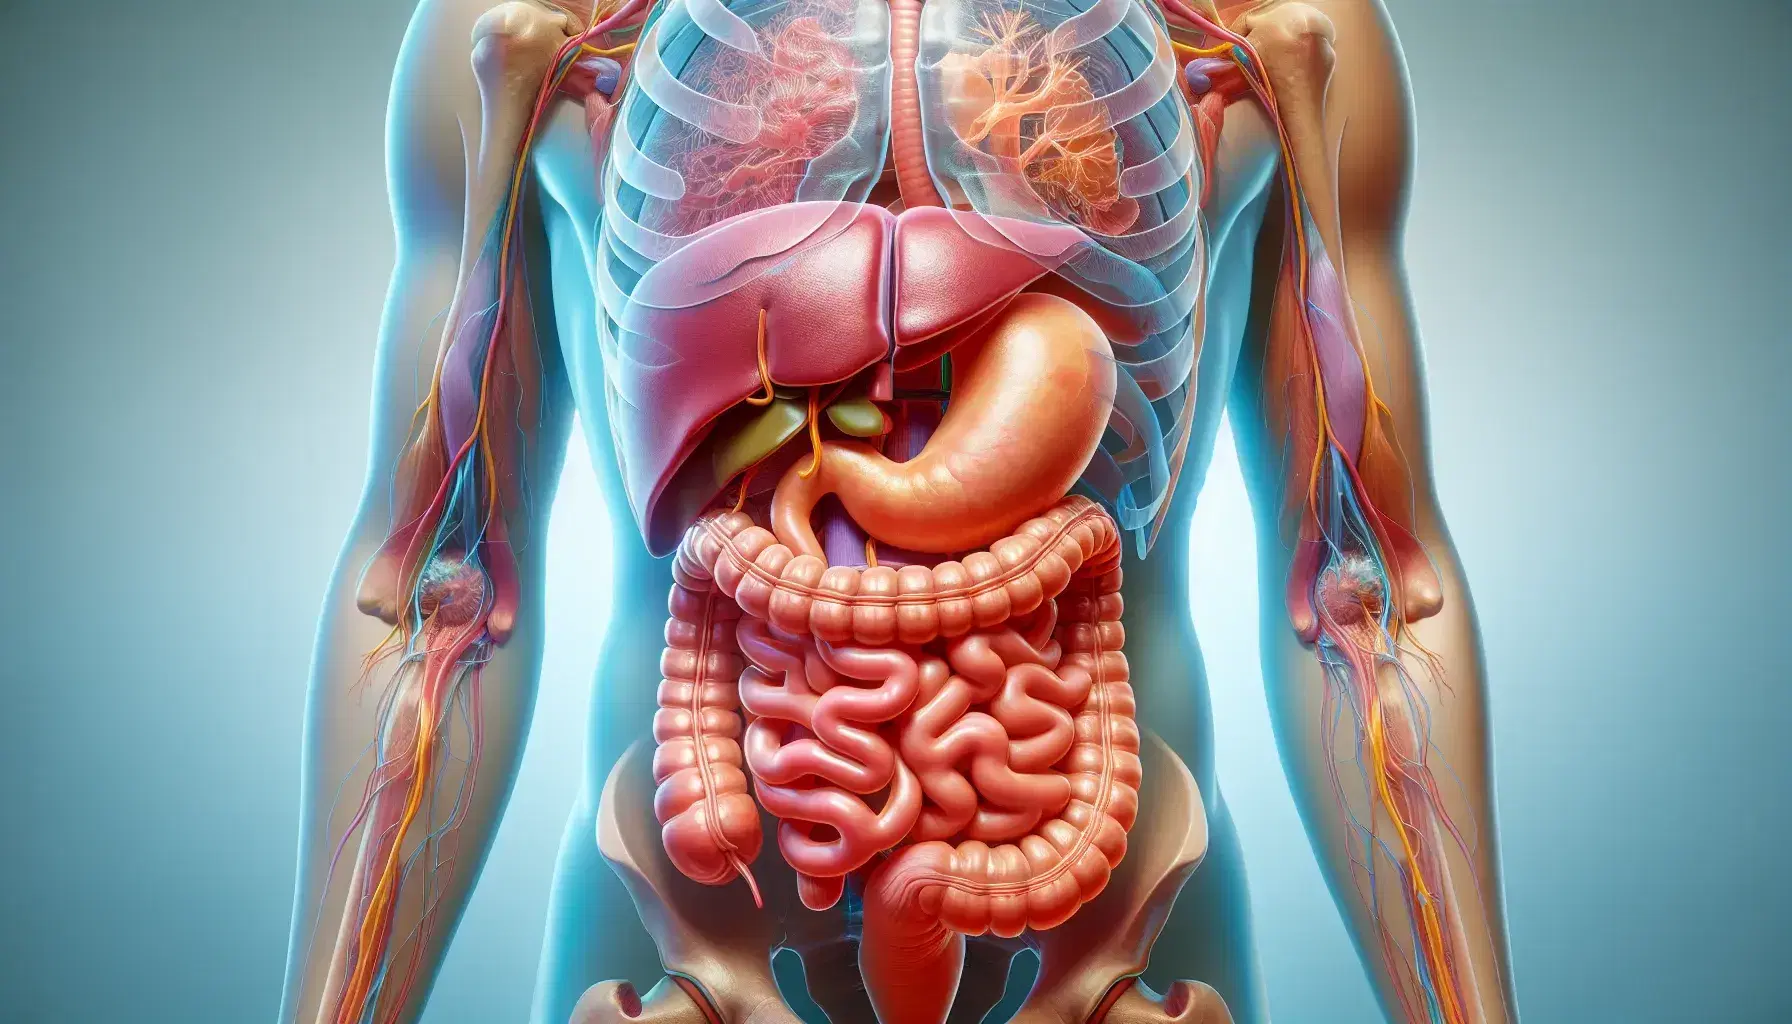 Vista anatómica detallada del sistema digestivo humano con torso transparente mostrando esófago, estómago, intestinos delgado y grueso, hígado y páncreas.